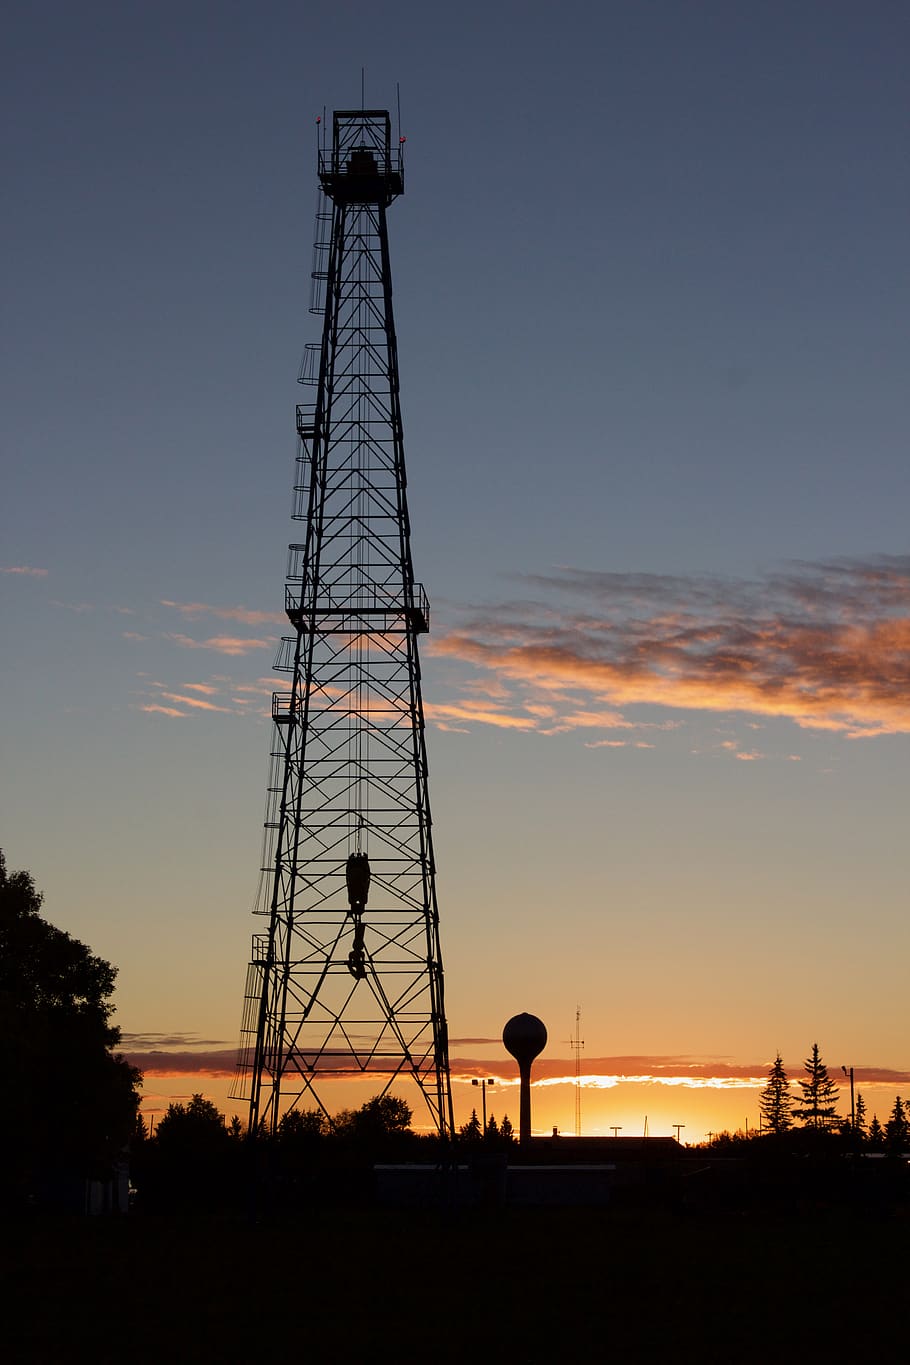 petróleo, torre de perforación, redwater, más alto, amanecer, puesta de sol, cielo, silueta, tecnología, color naranja